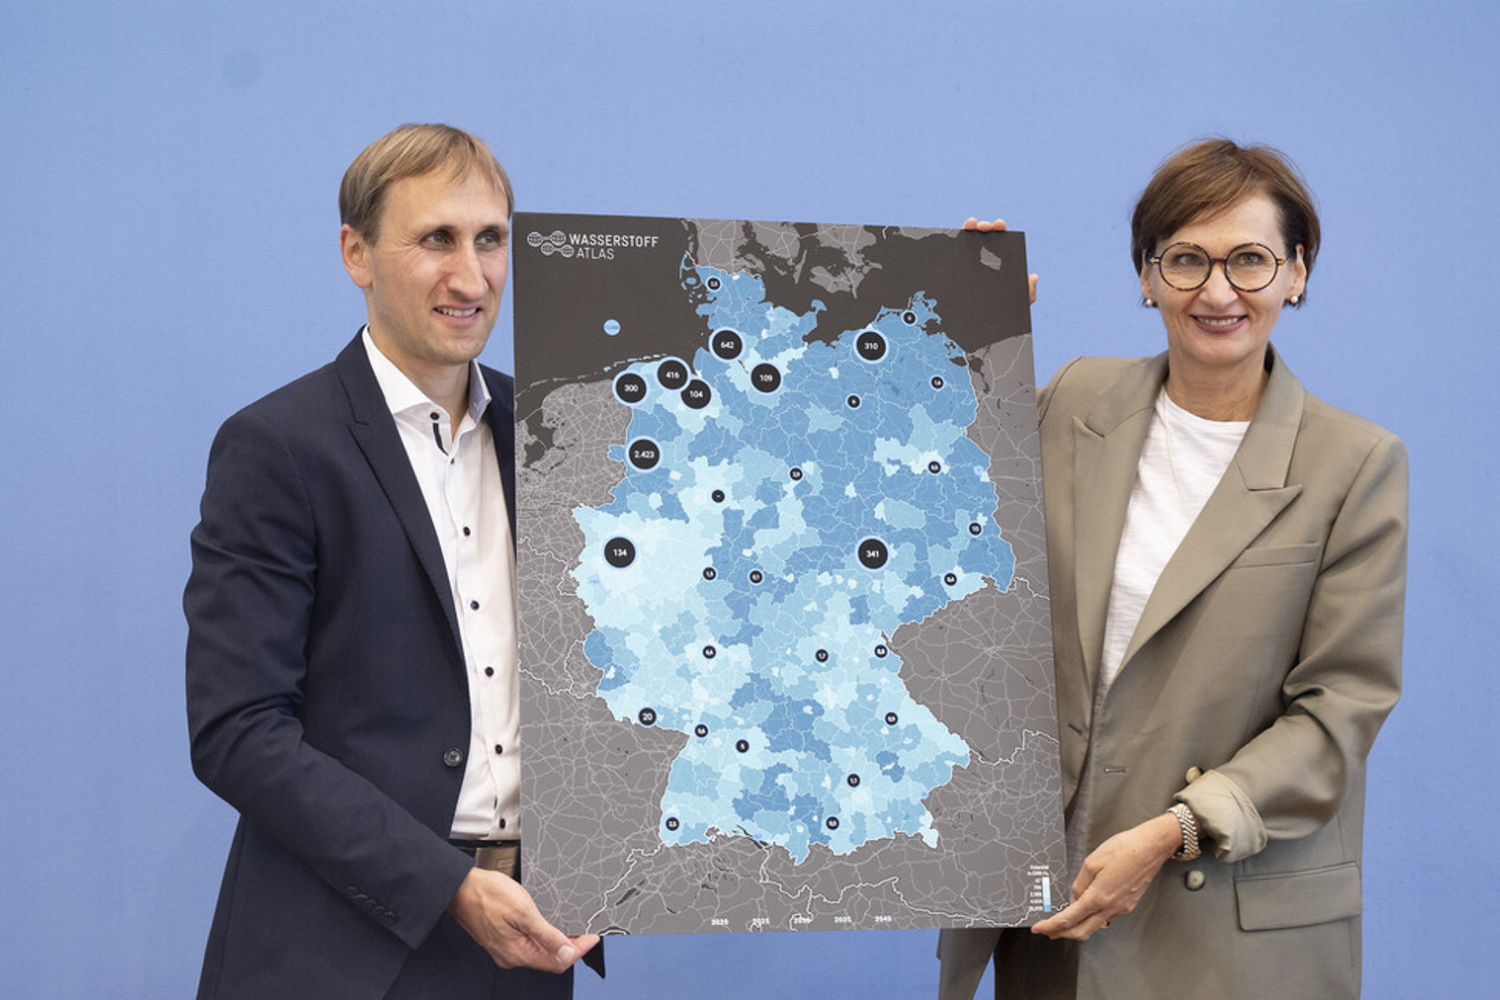 Bundeministerin Bettina Stark-Watzinger und Professor Michael Sterner halten ein Plakat mit einer Deutschlandkarte in die Kamera.